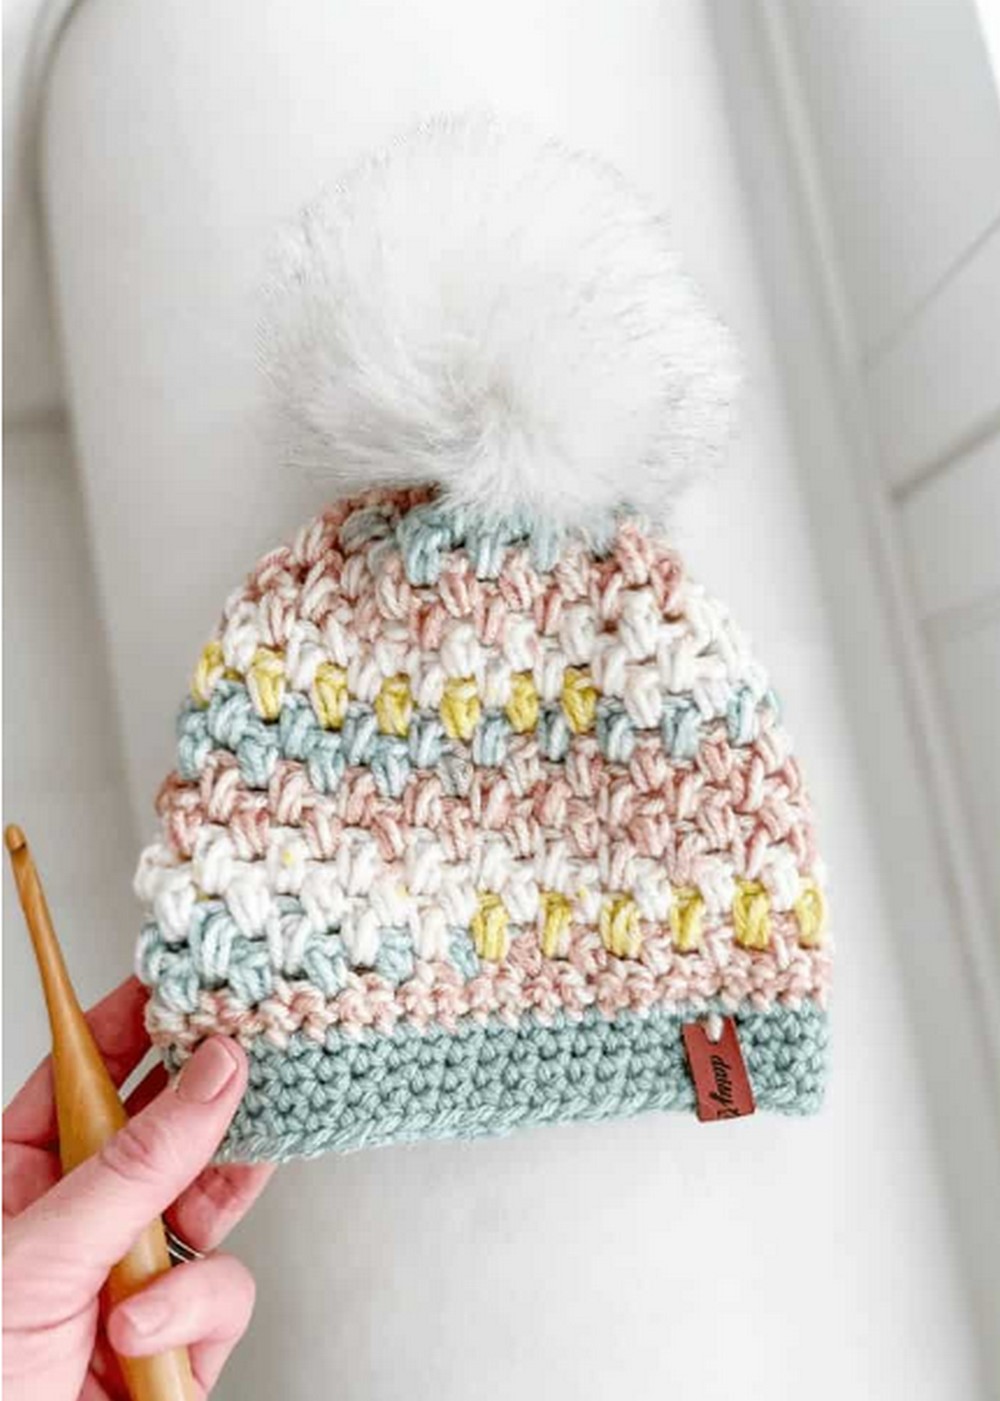 Easy Beanie Crochet Pattern